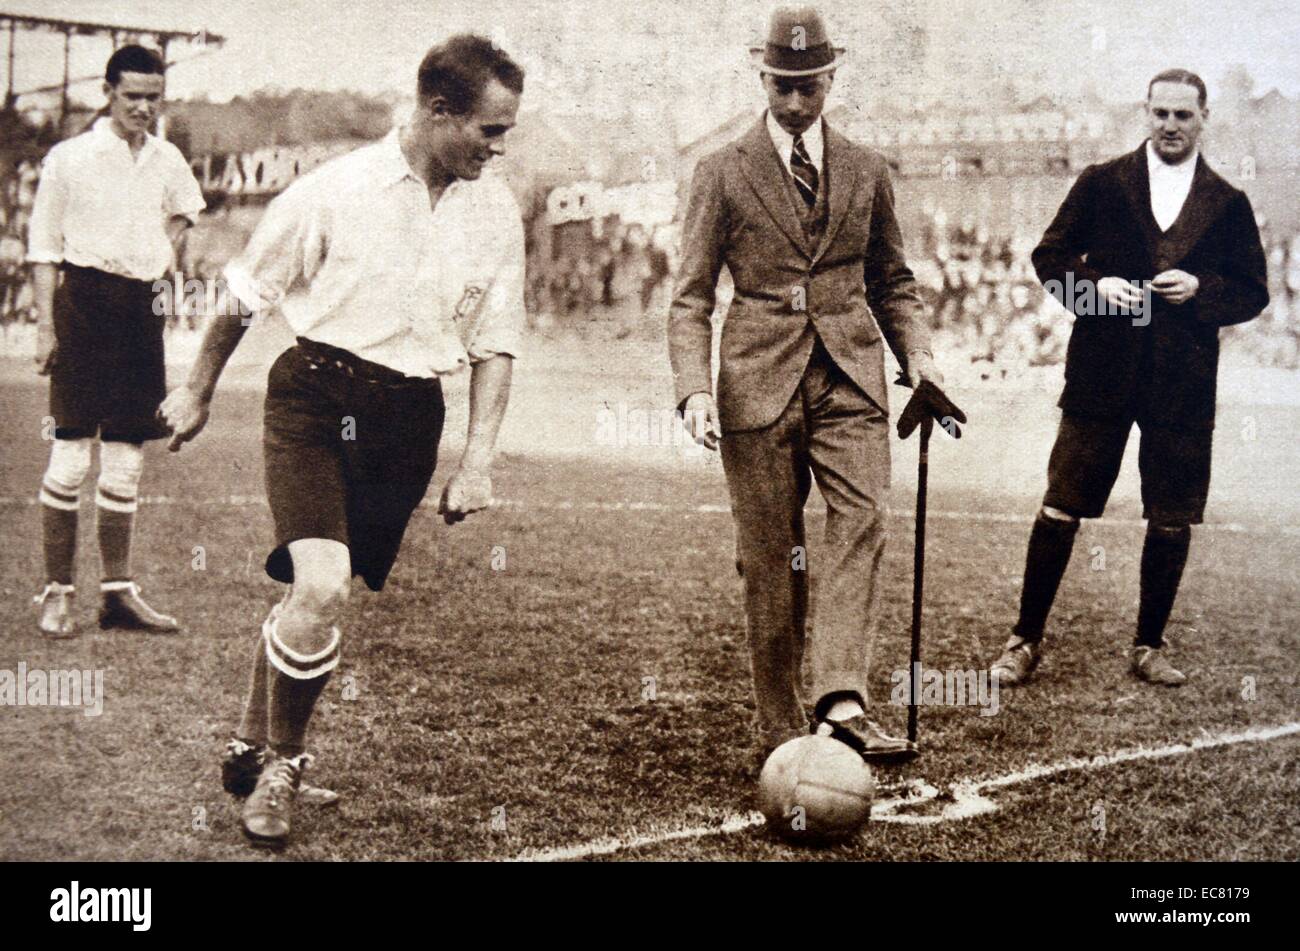 Der Duke of York "startet später König George VI" den Ball bei einem Fußballspiel in Tottenham Spurs Fußballplatz, London 1922 Stockfoto